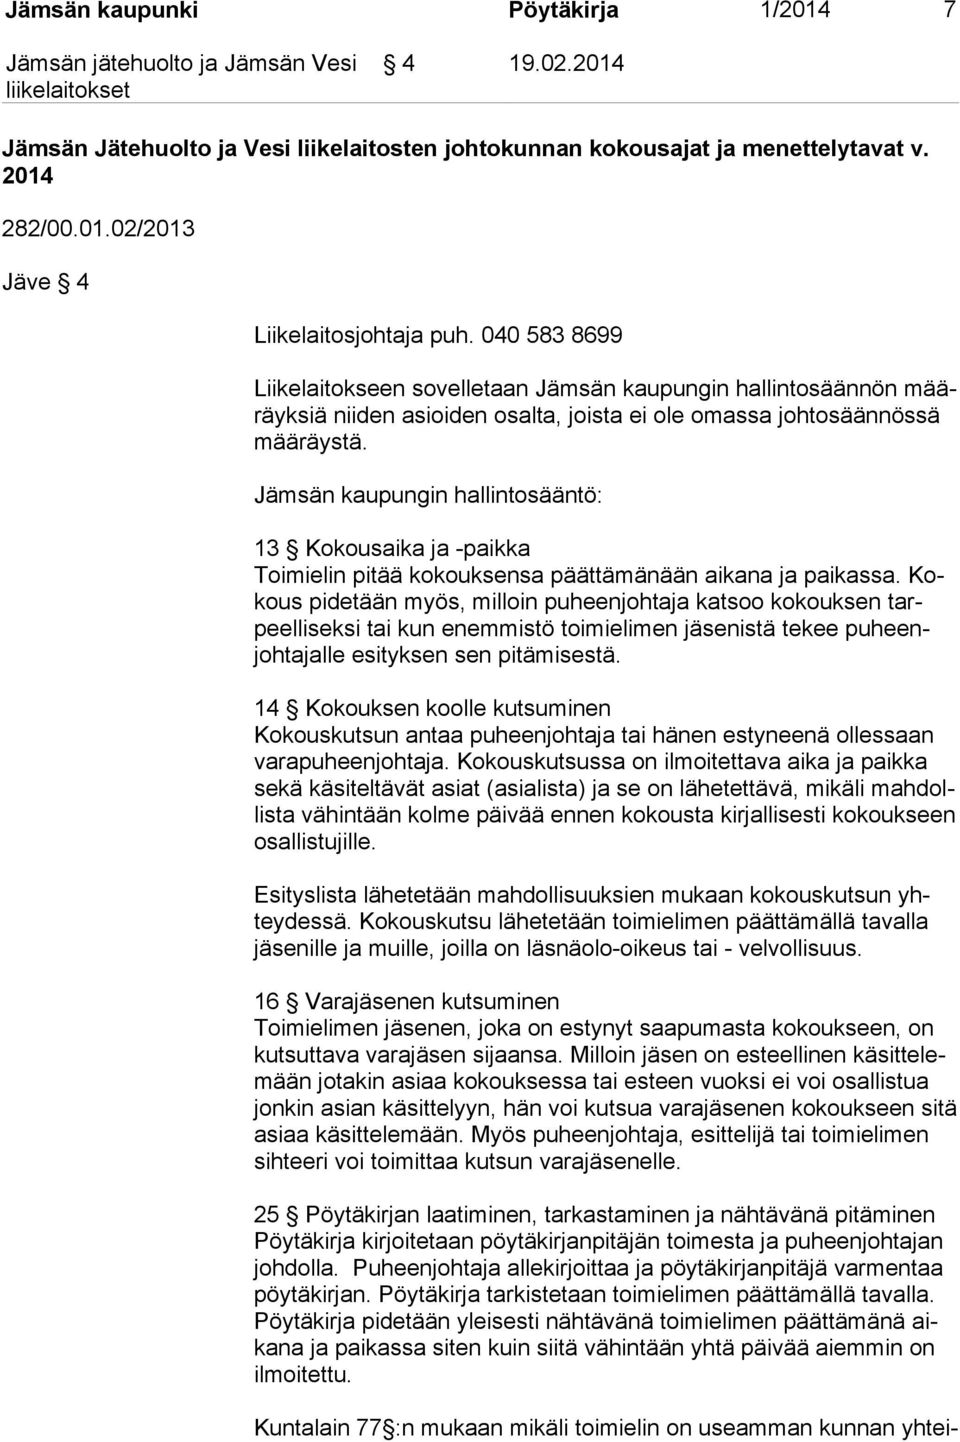 Jämsän kaupungin hallintosääntö: 13 Kokousaika ja -paikka Toimielin pitää kokouksensa päättämänään aikana ja paikassa.